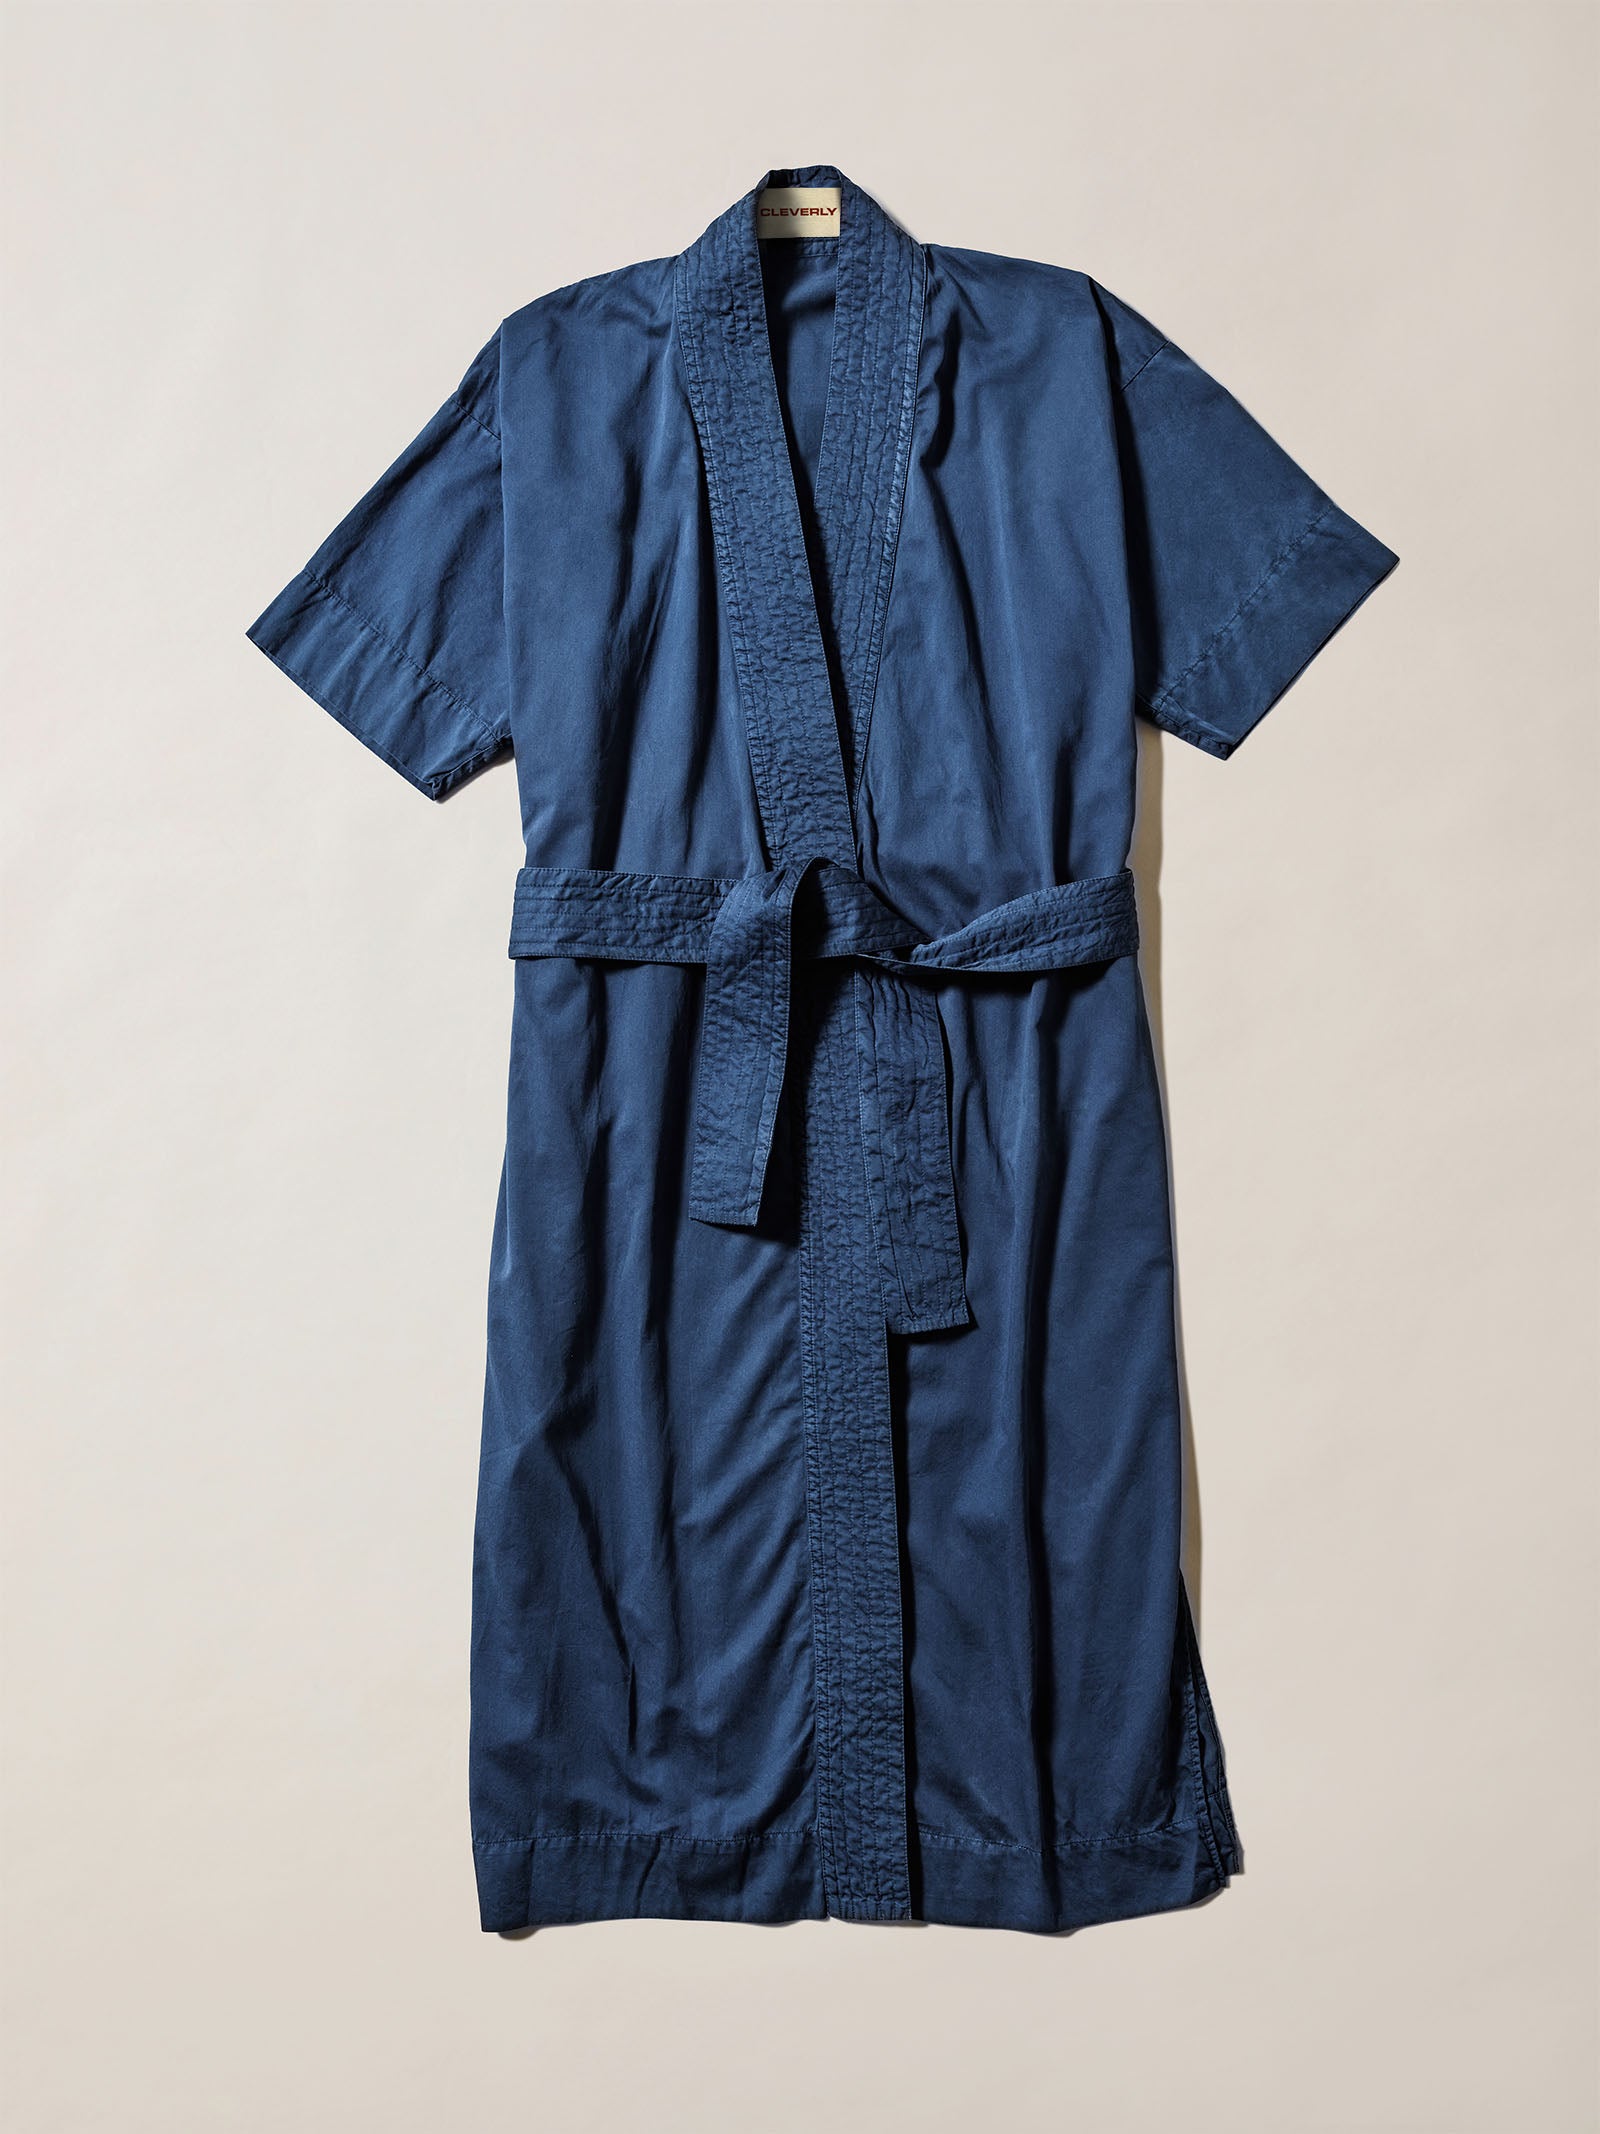 100% cotton kimono, cotton robe, navy blue with tie, long length cotton robe, kimonos